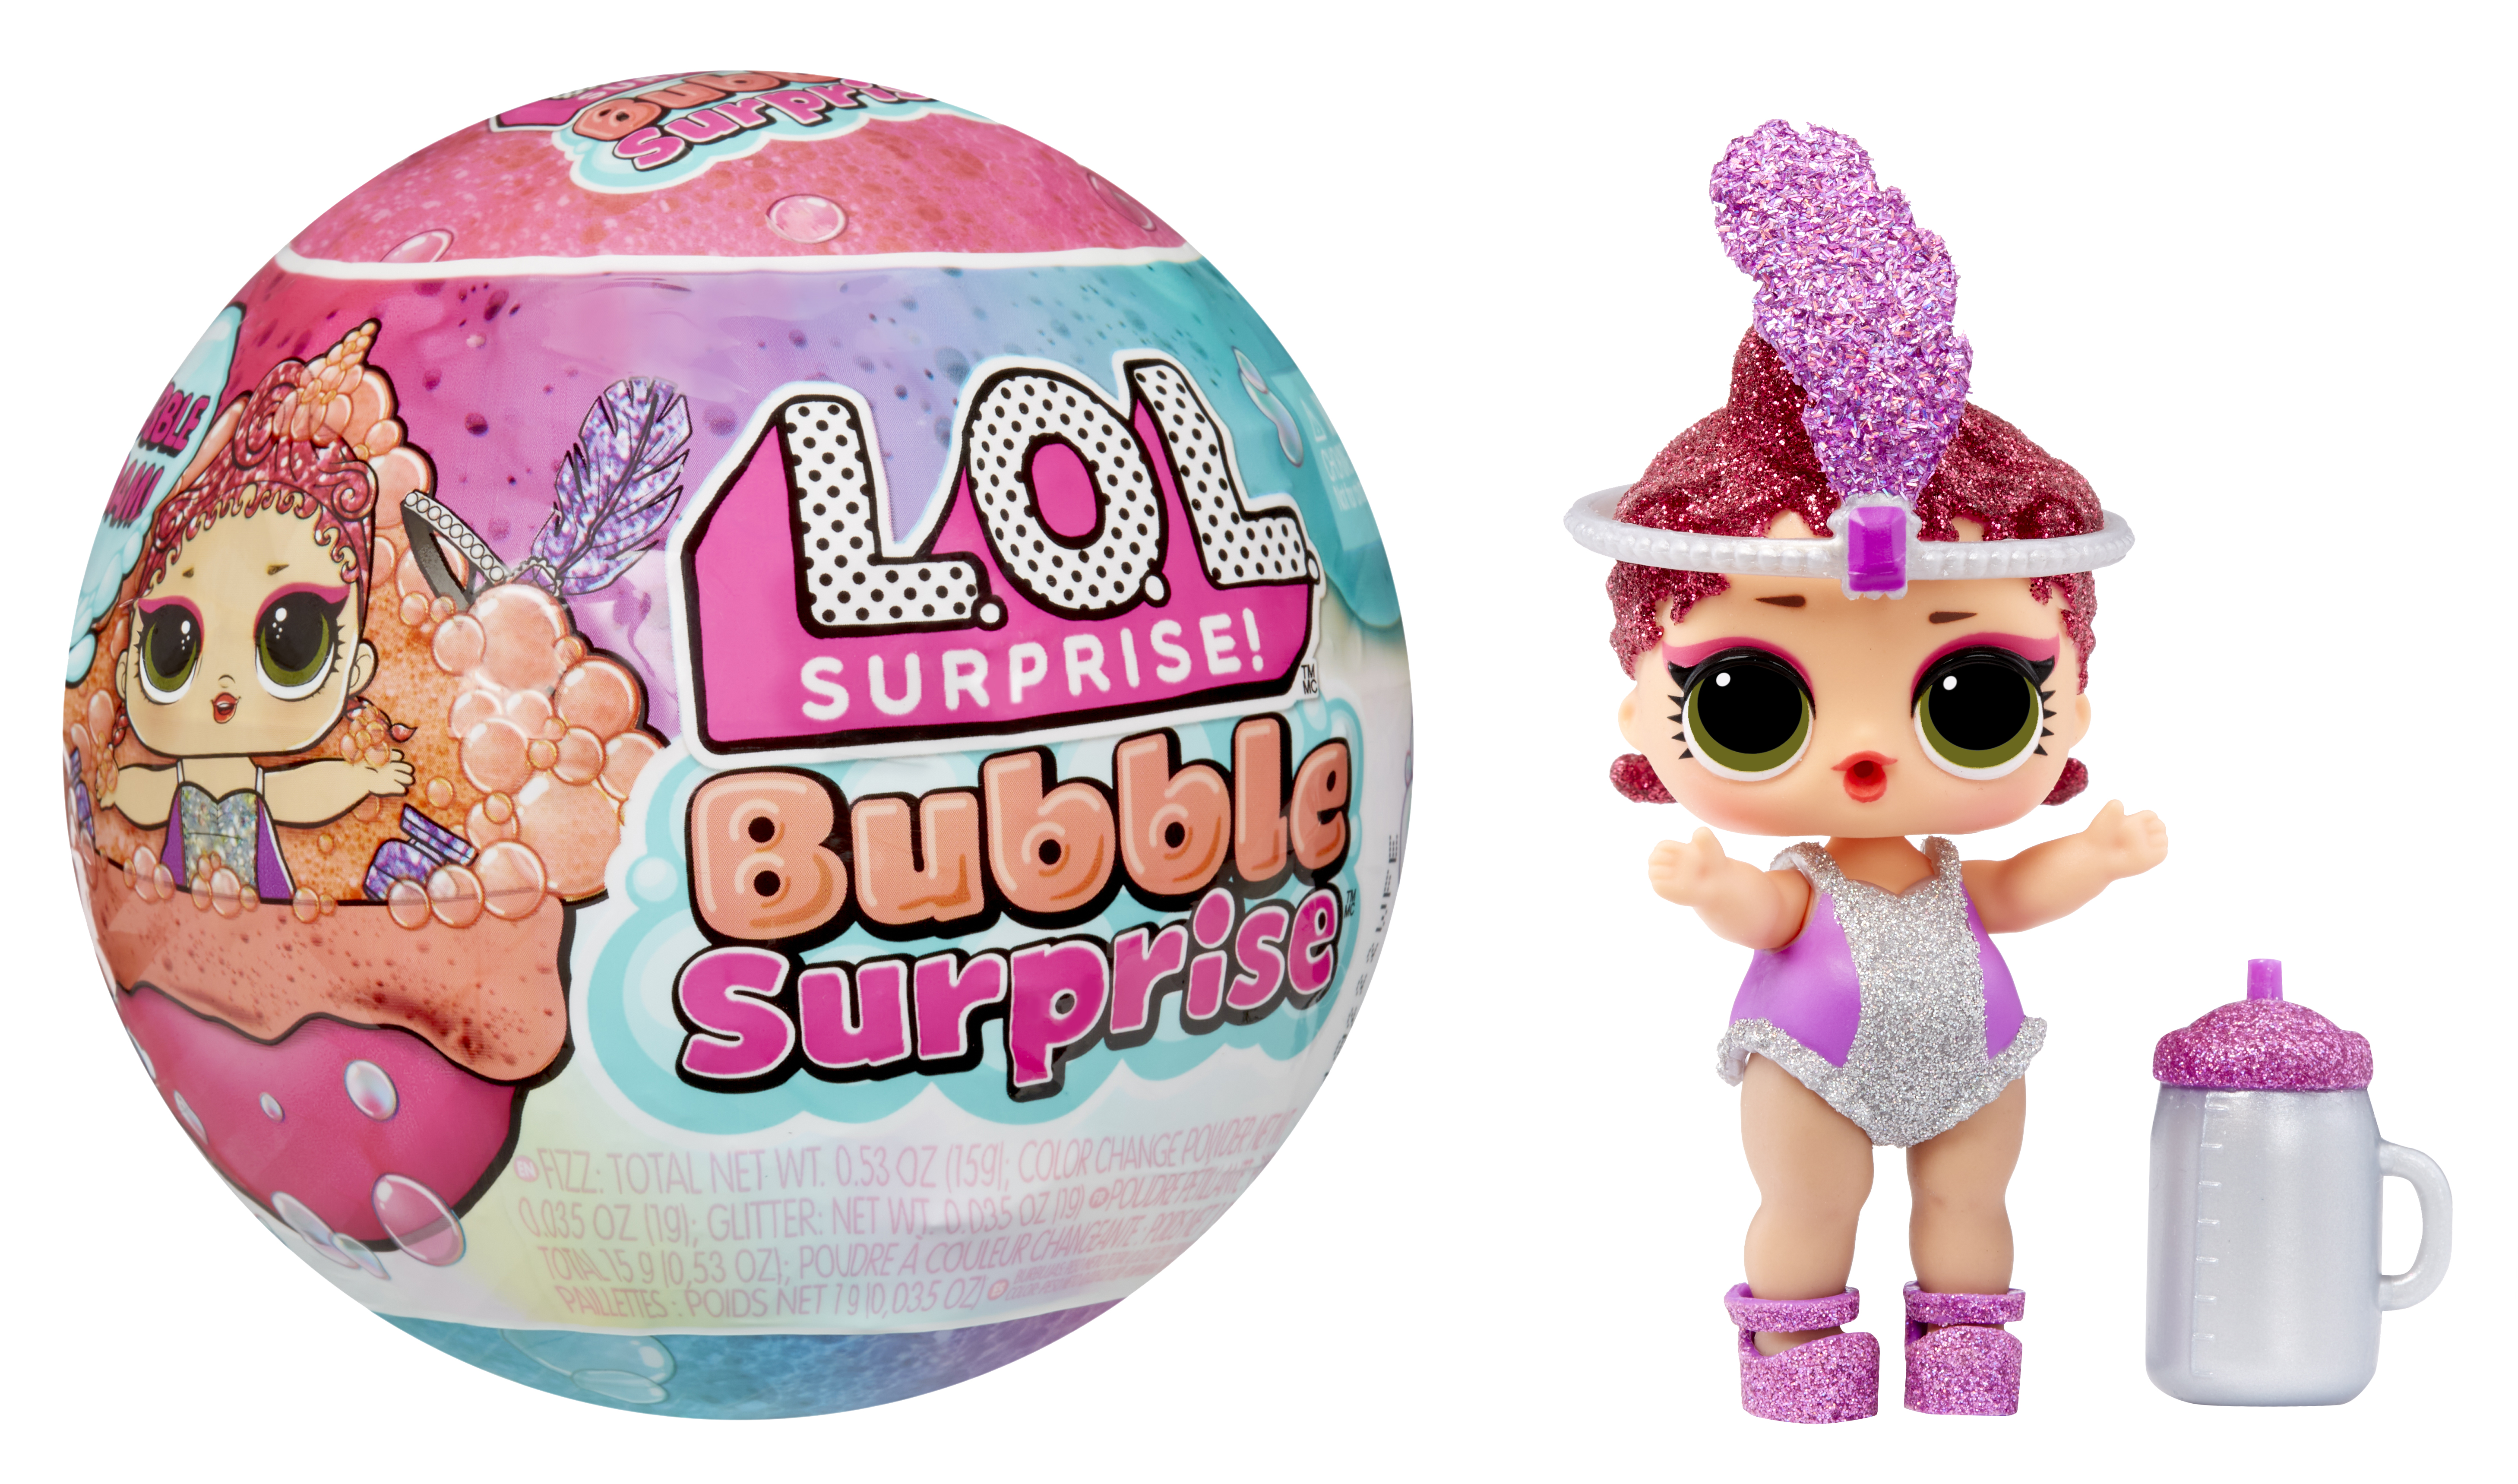 New L.O.L. Surprise! Bubble Surprise Dolls Put a Twist on Surprise